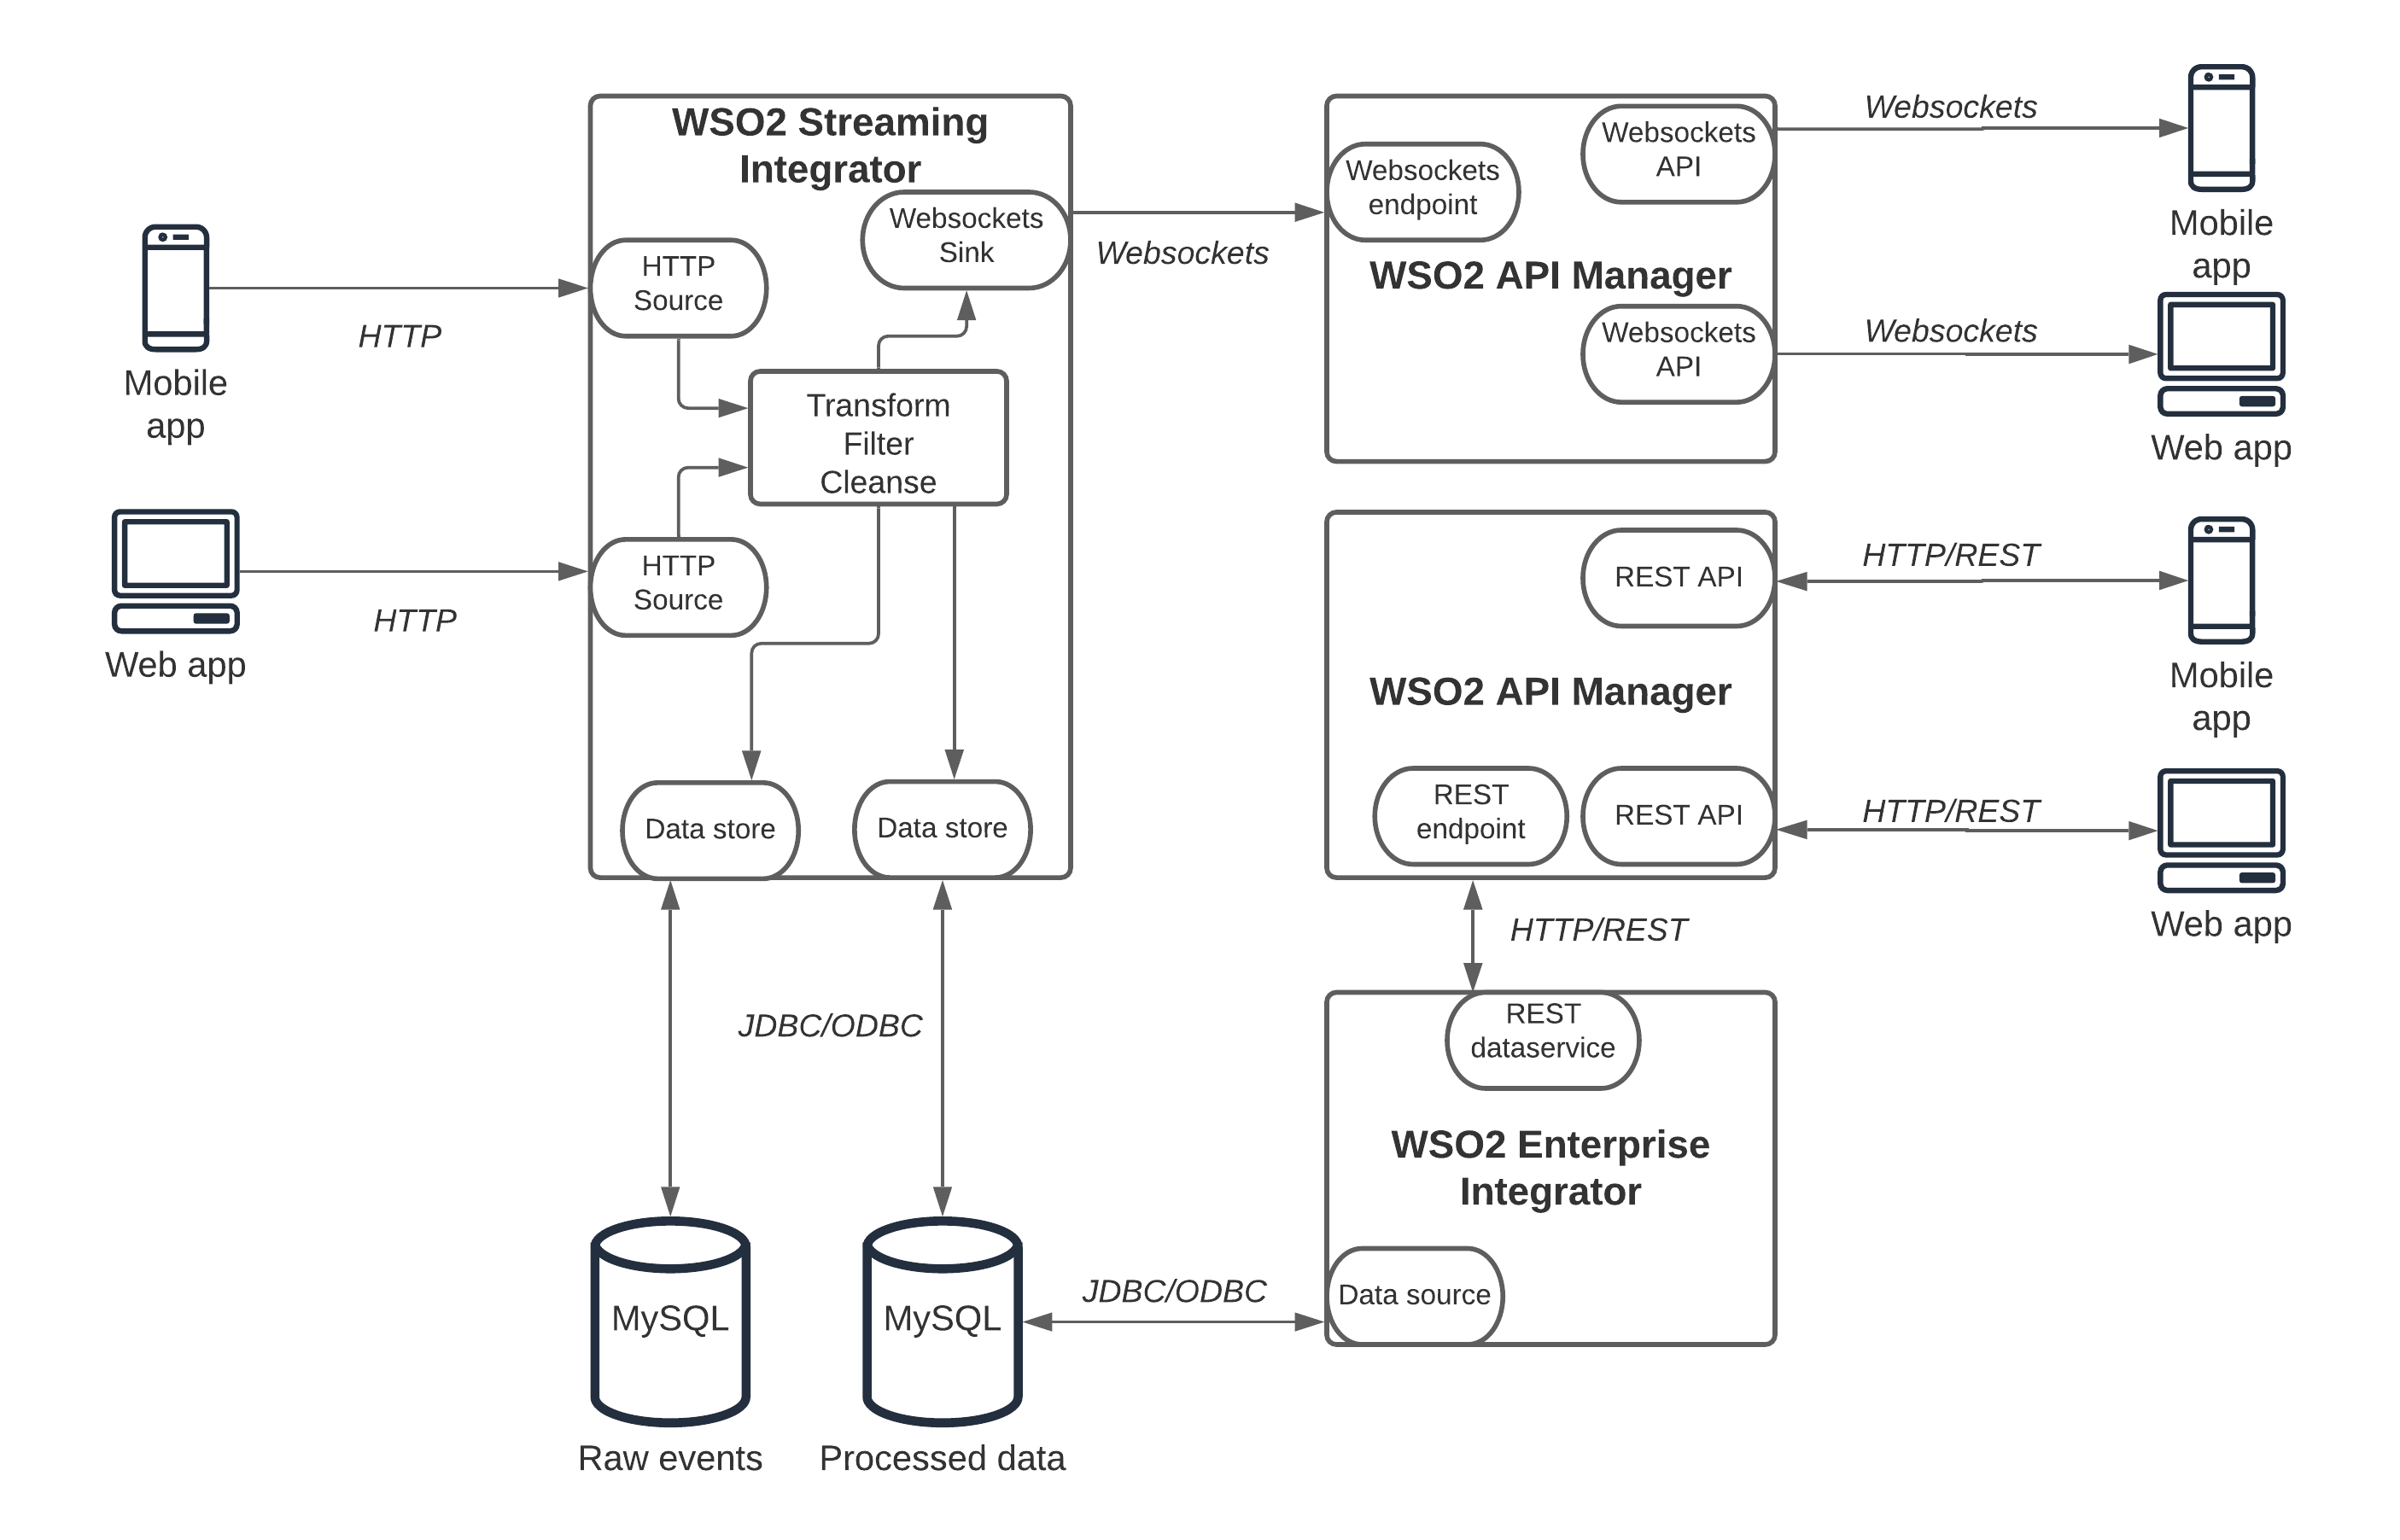 WSO2 Platform details